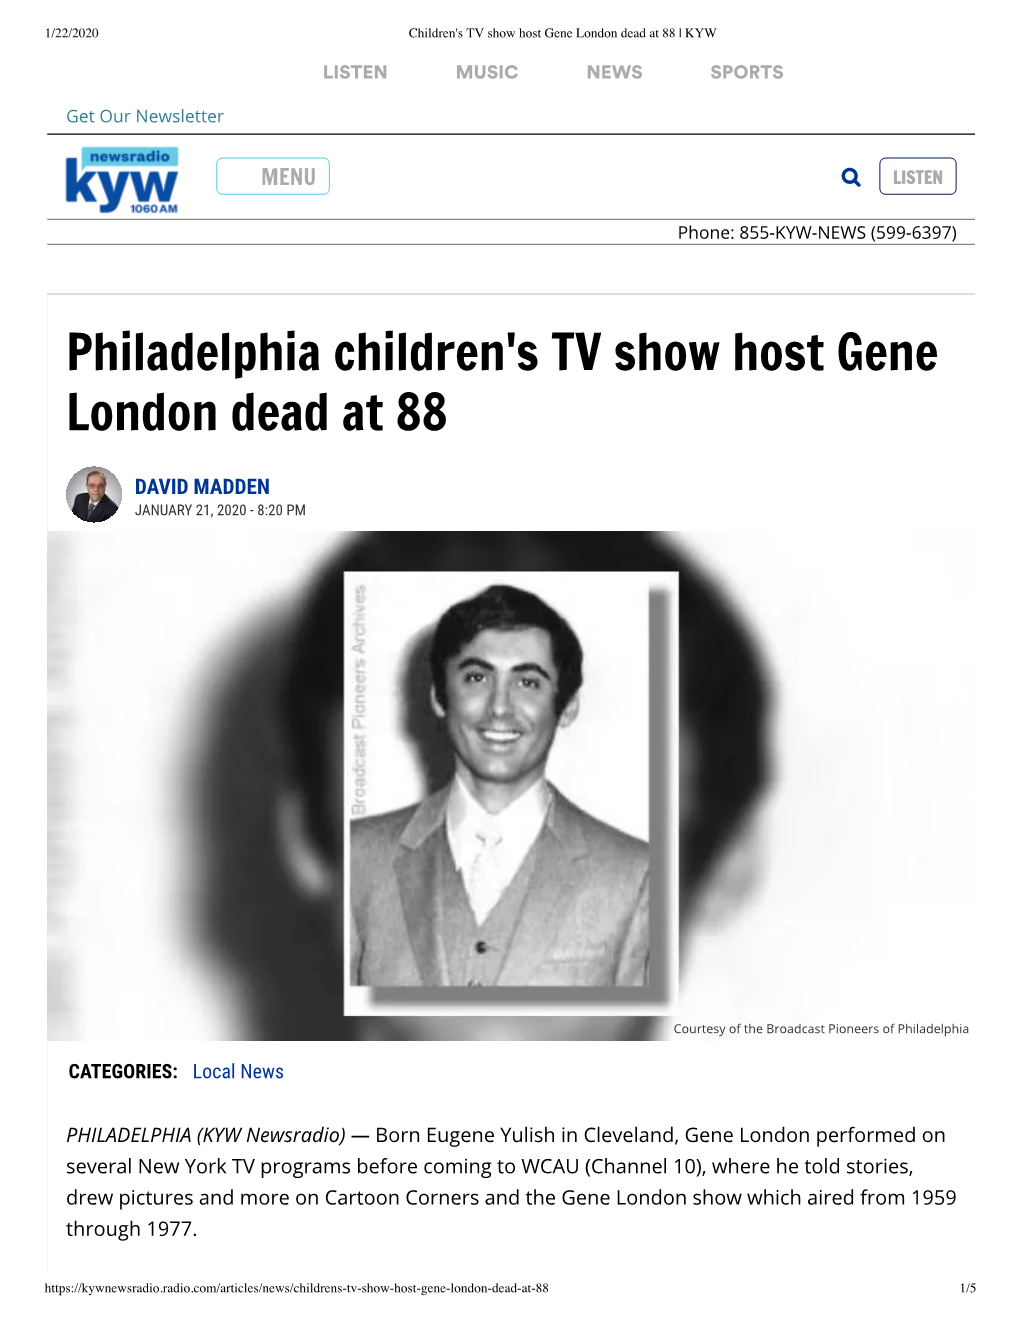 Philadelphia Children's TV Show Host Gene London Dead at 88